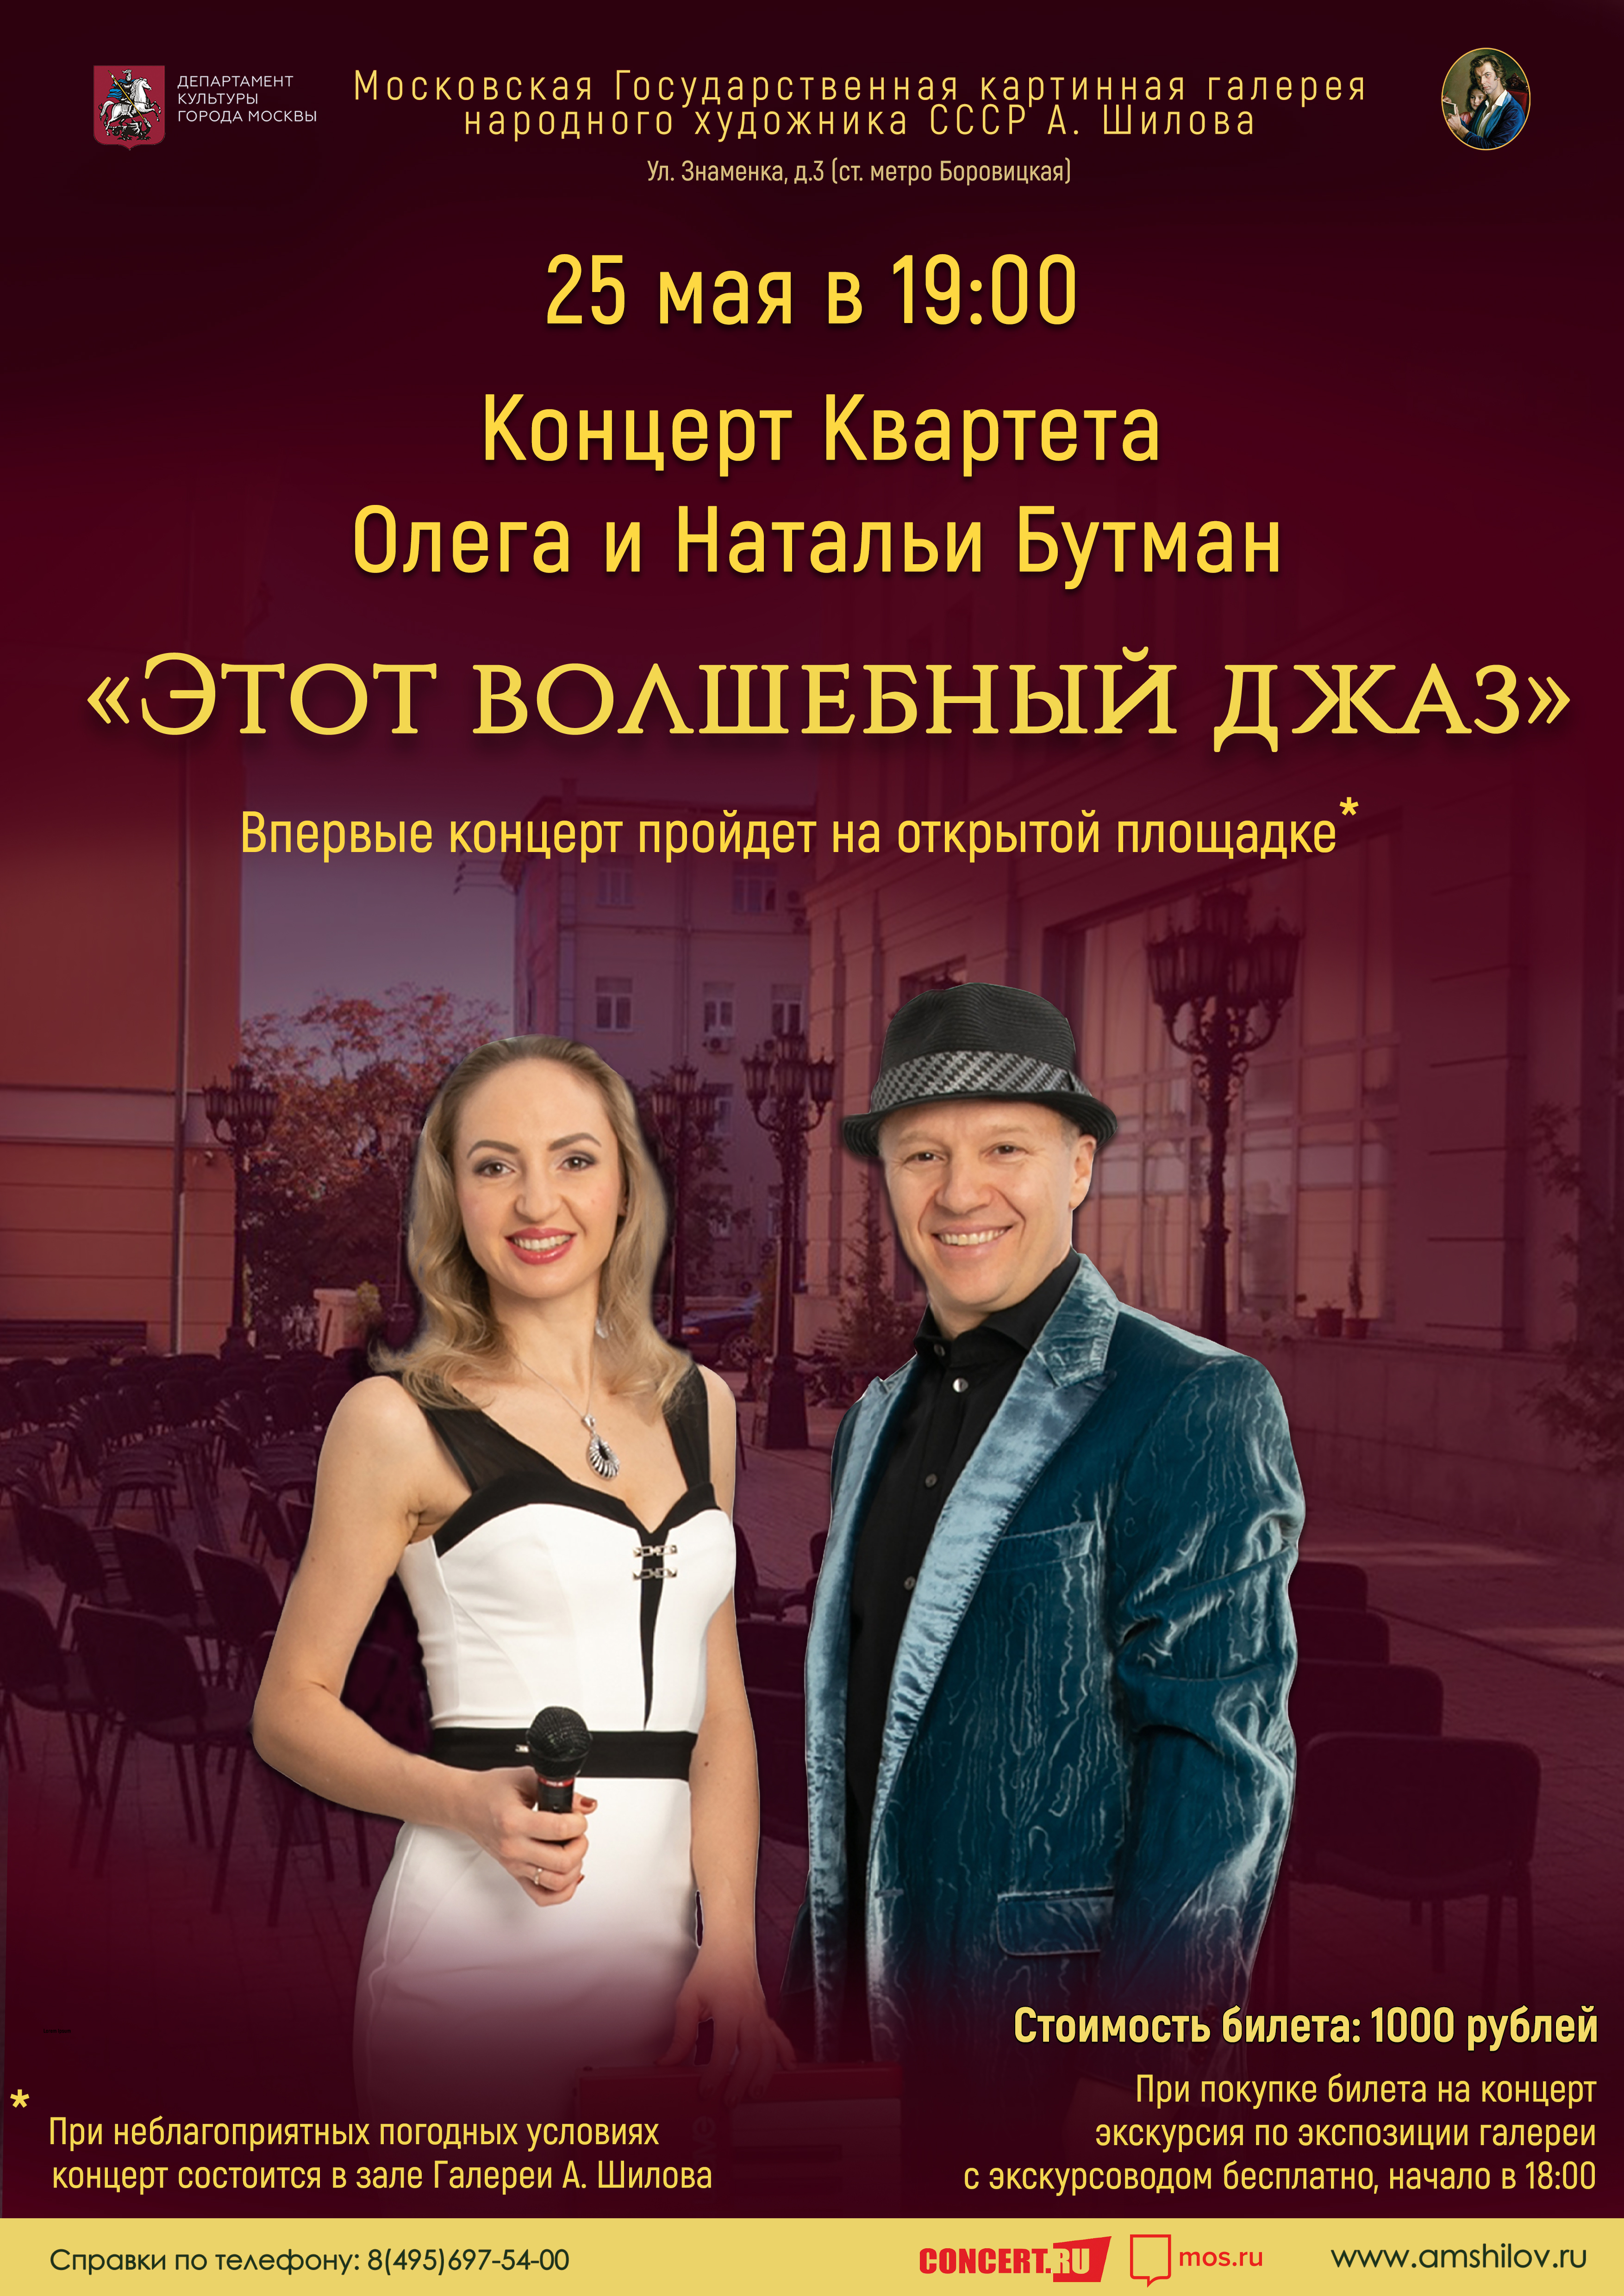 ОТМЕНЕН ПО ТЕХНИЧЕСКИМ ПРИЧИНАМ - Концерт Квартета Олега и Натальи Бутман «Этот волшебный джаз»